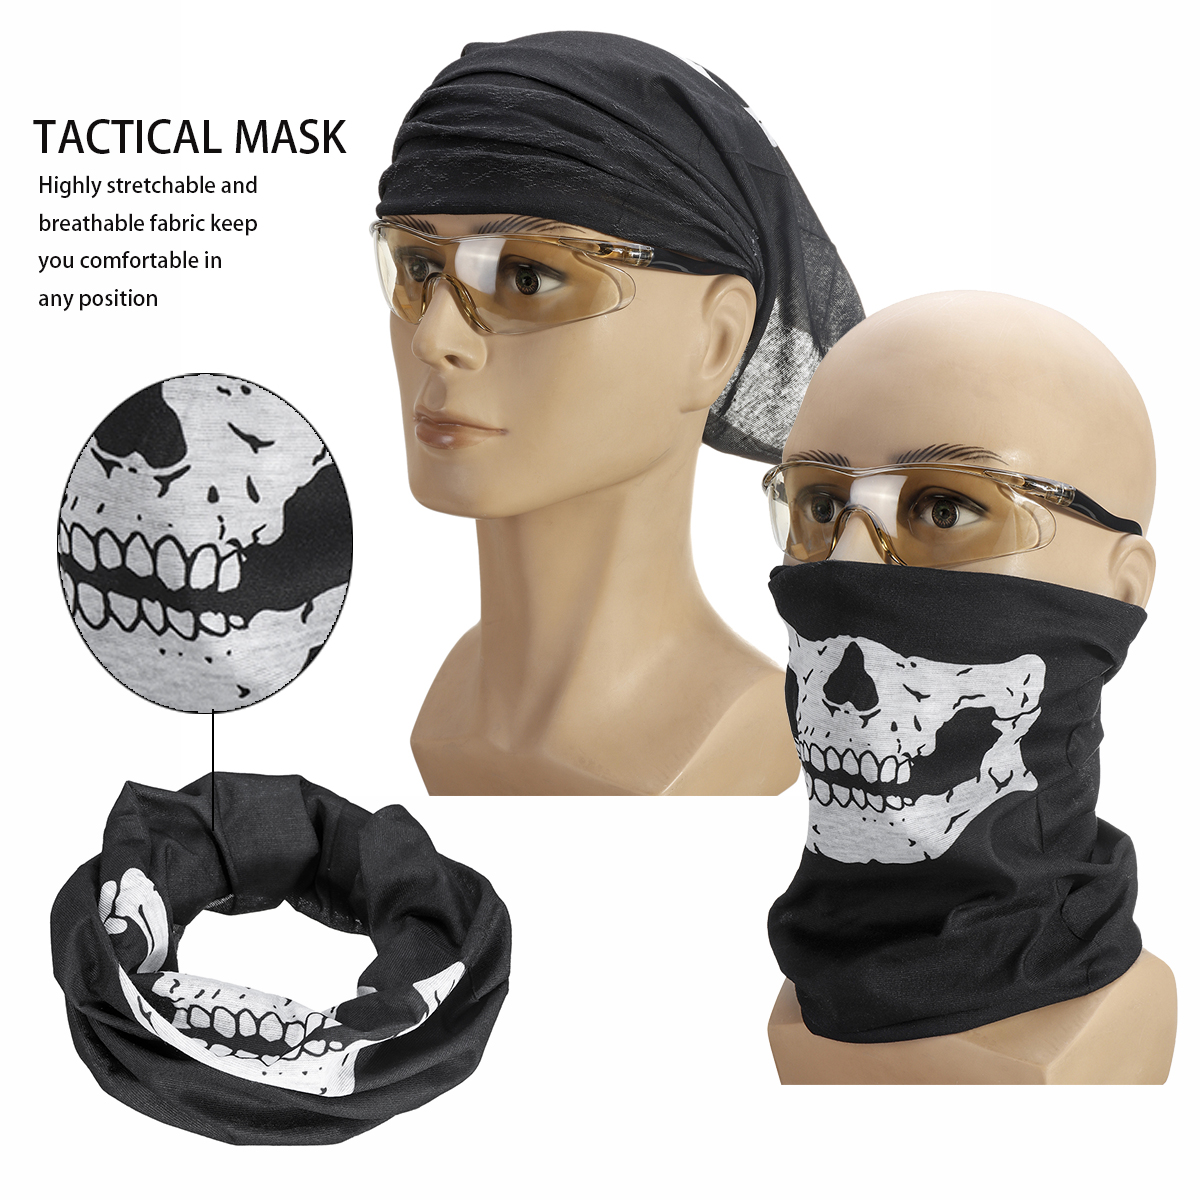 2-Sets-Adjustable-Kids-Tactical-Vest-Masks-Glasses-Suit-Outdoor-Recration-Game-1638527-3